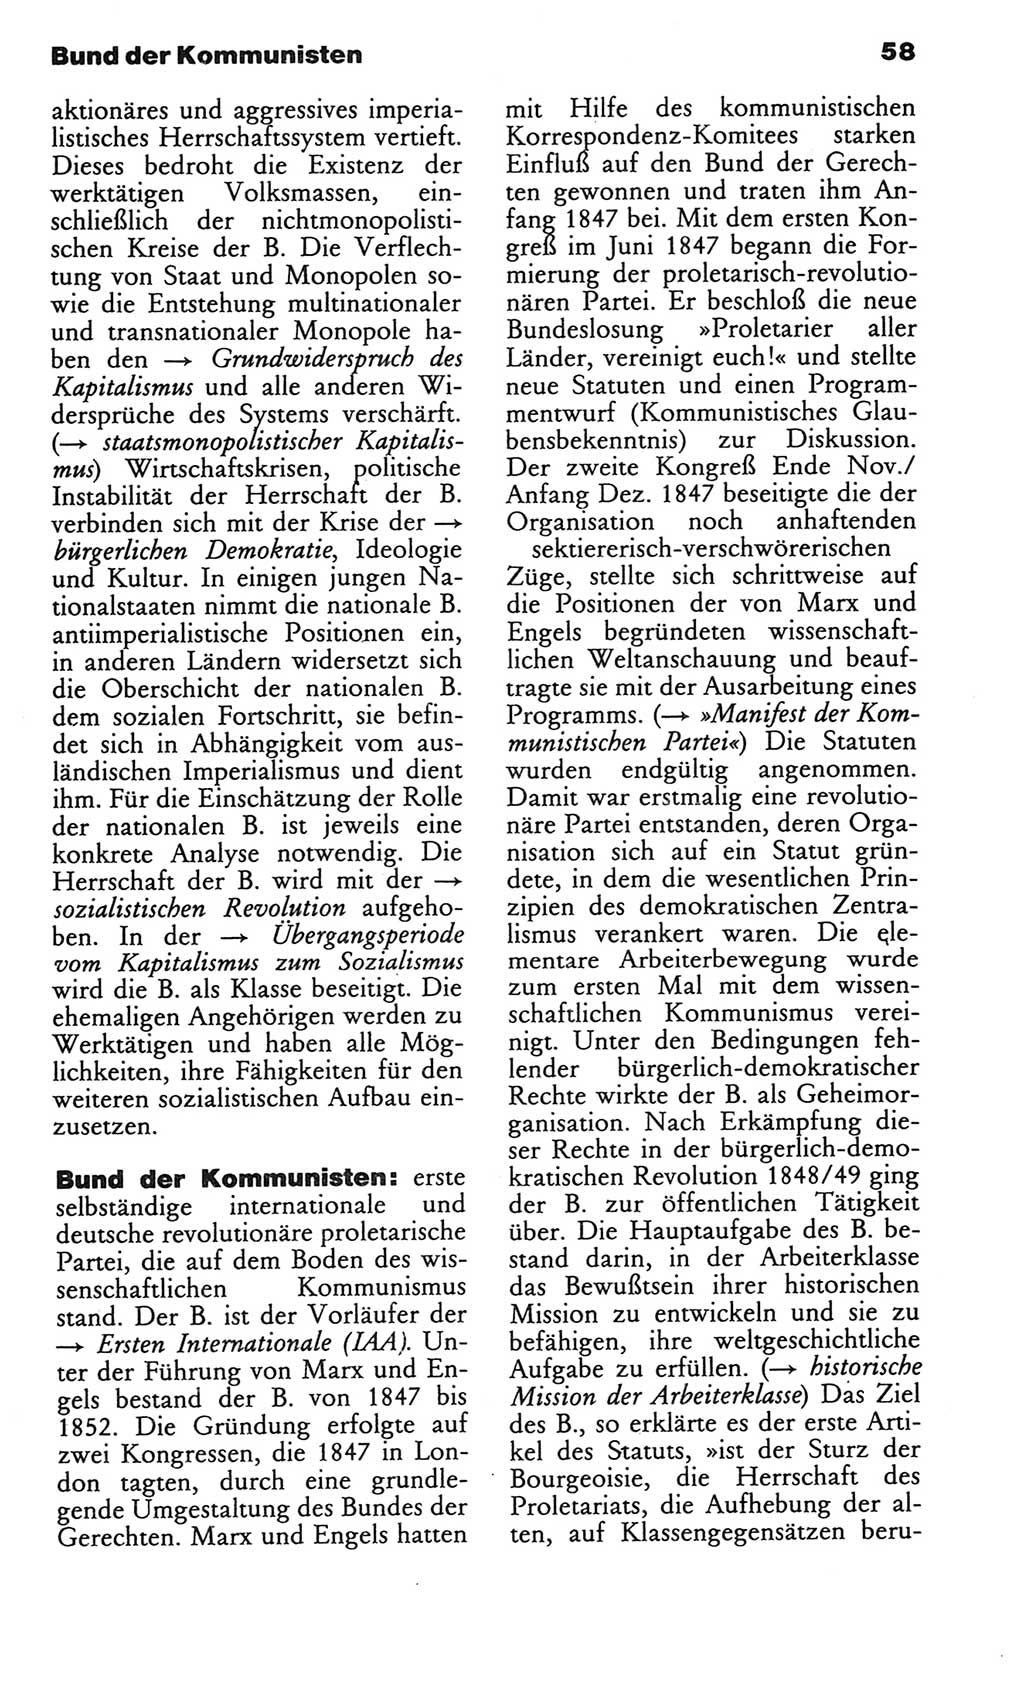 Wörterbuch des wissenschaftlichen Kommunismus [Deutsche Demokratische Republik (DDR)] 1982, Seite 58 (Wb. wiss. Komm. DDR 1982, S. 58)